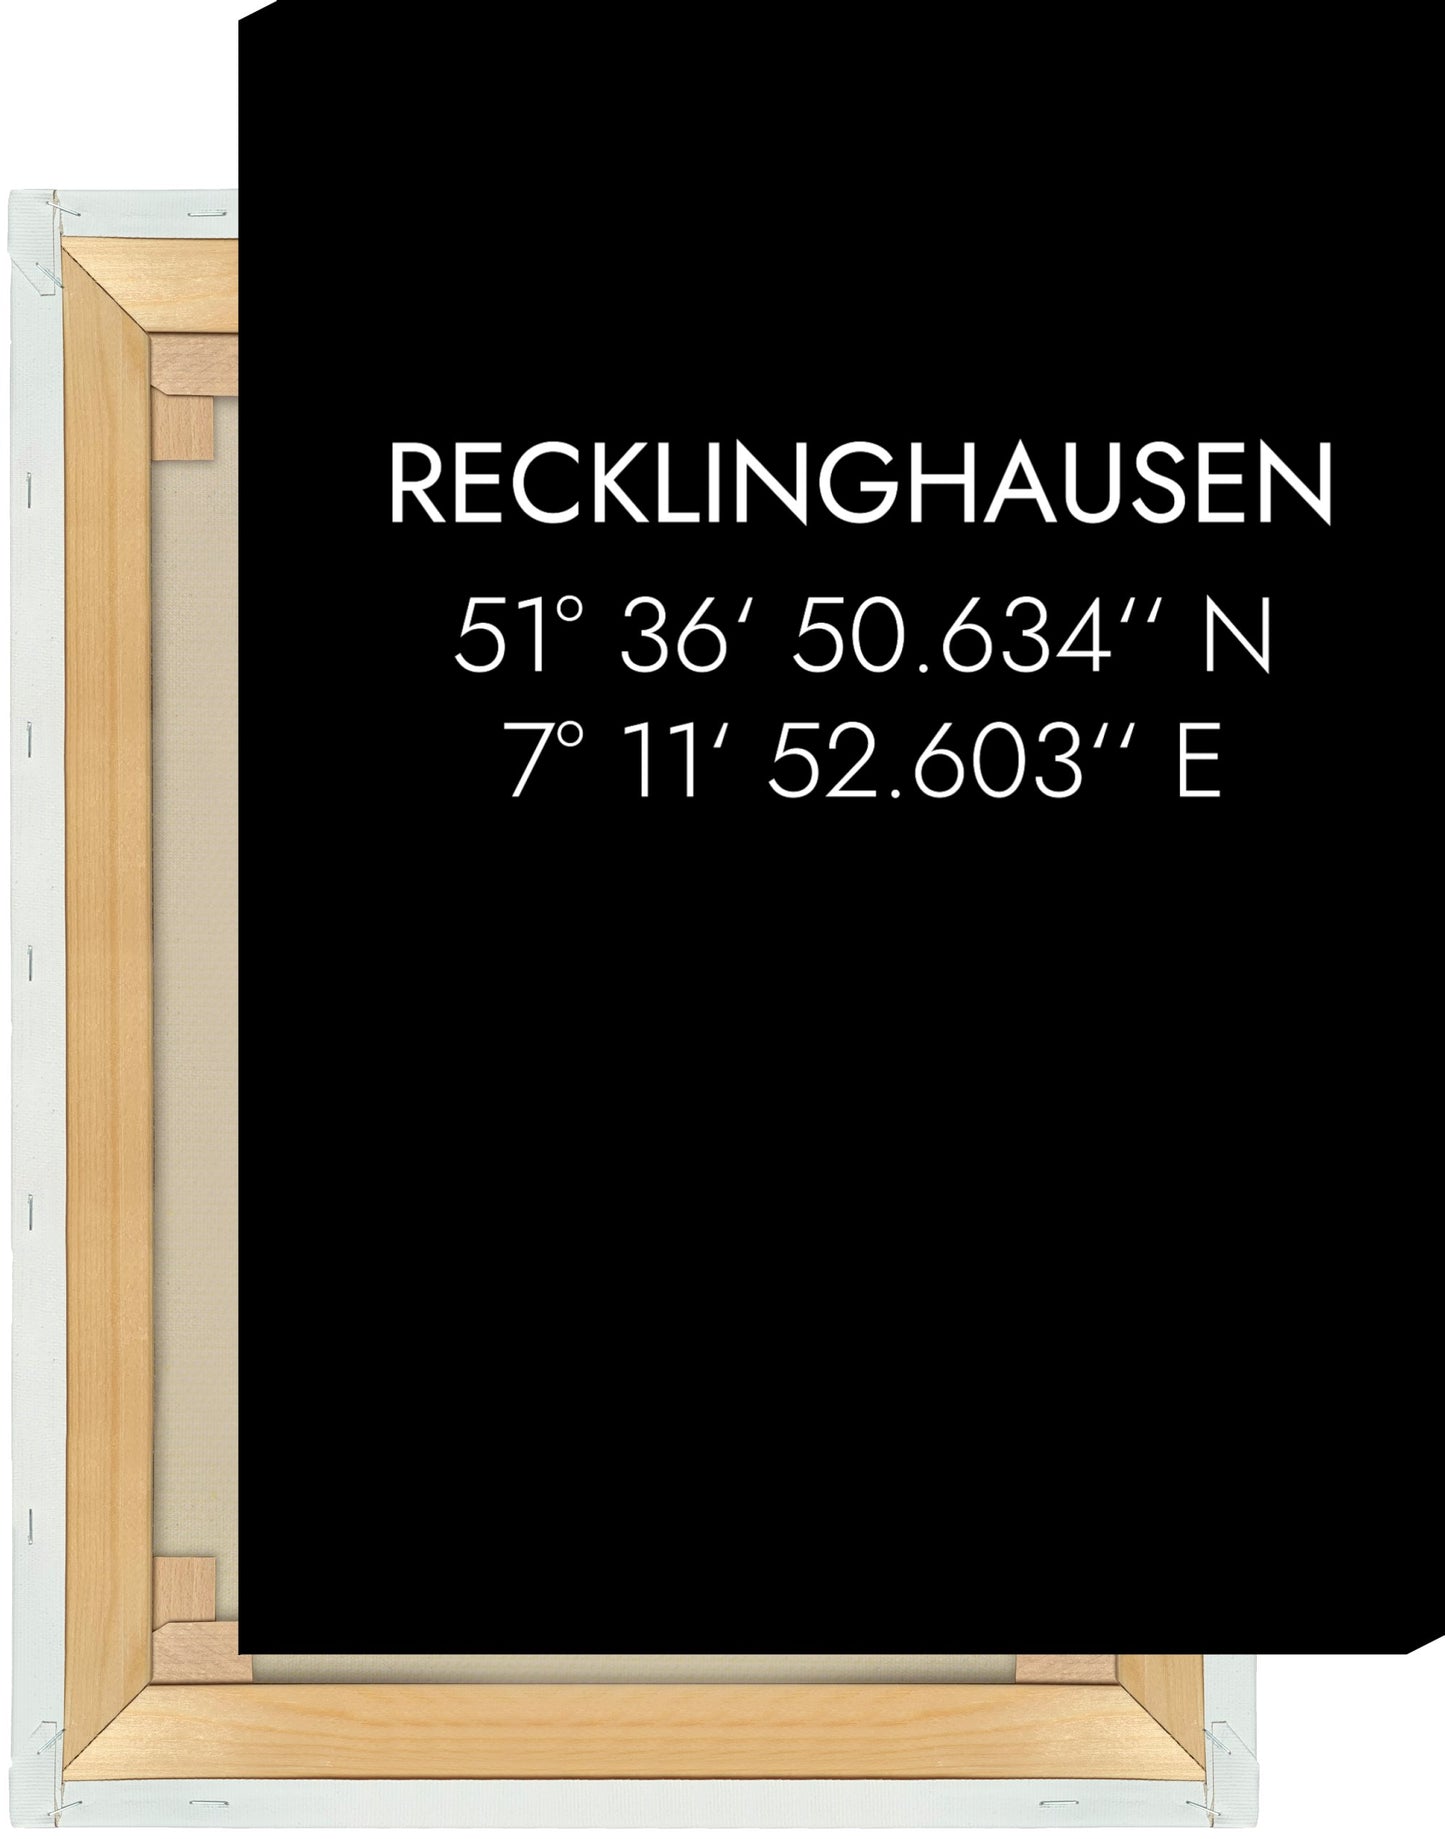 Leinwand Recklinghausen Koordinaten #1